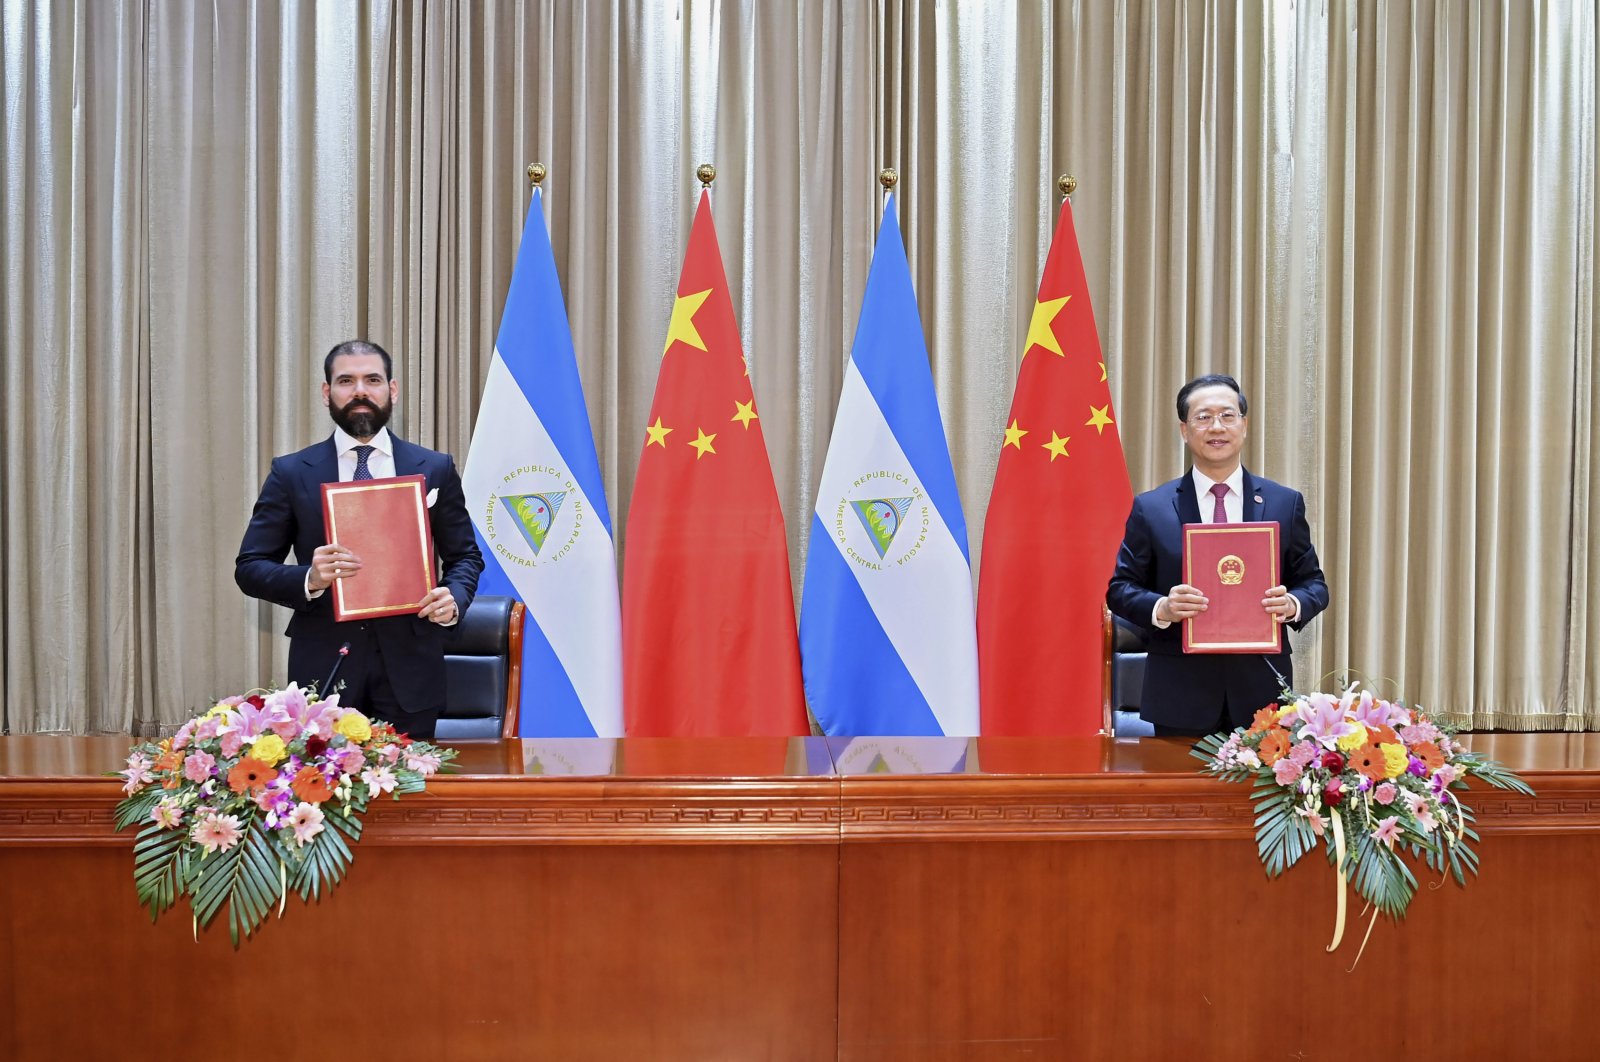 Nikaragua memutuskan hubungan diplomatik dengan Taiwan untuk memihak China